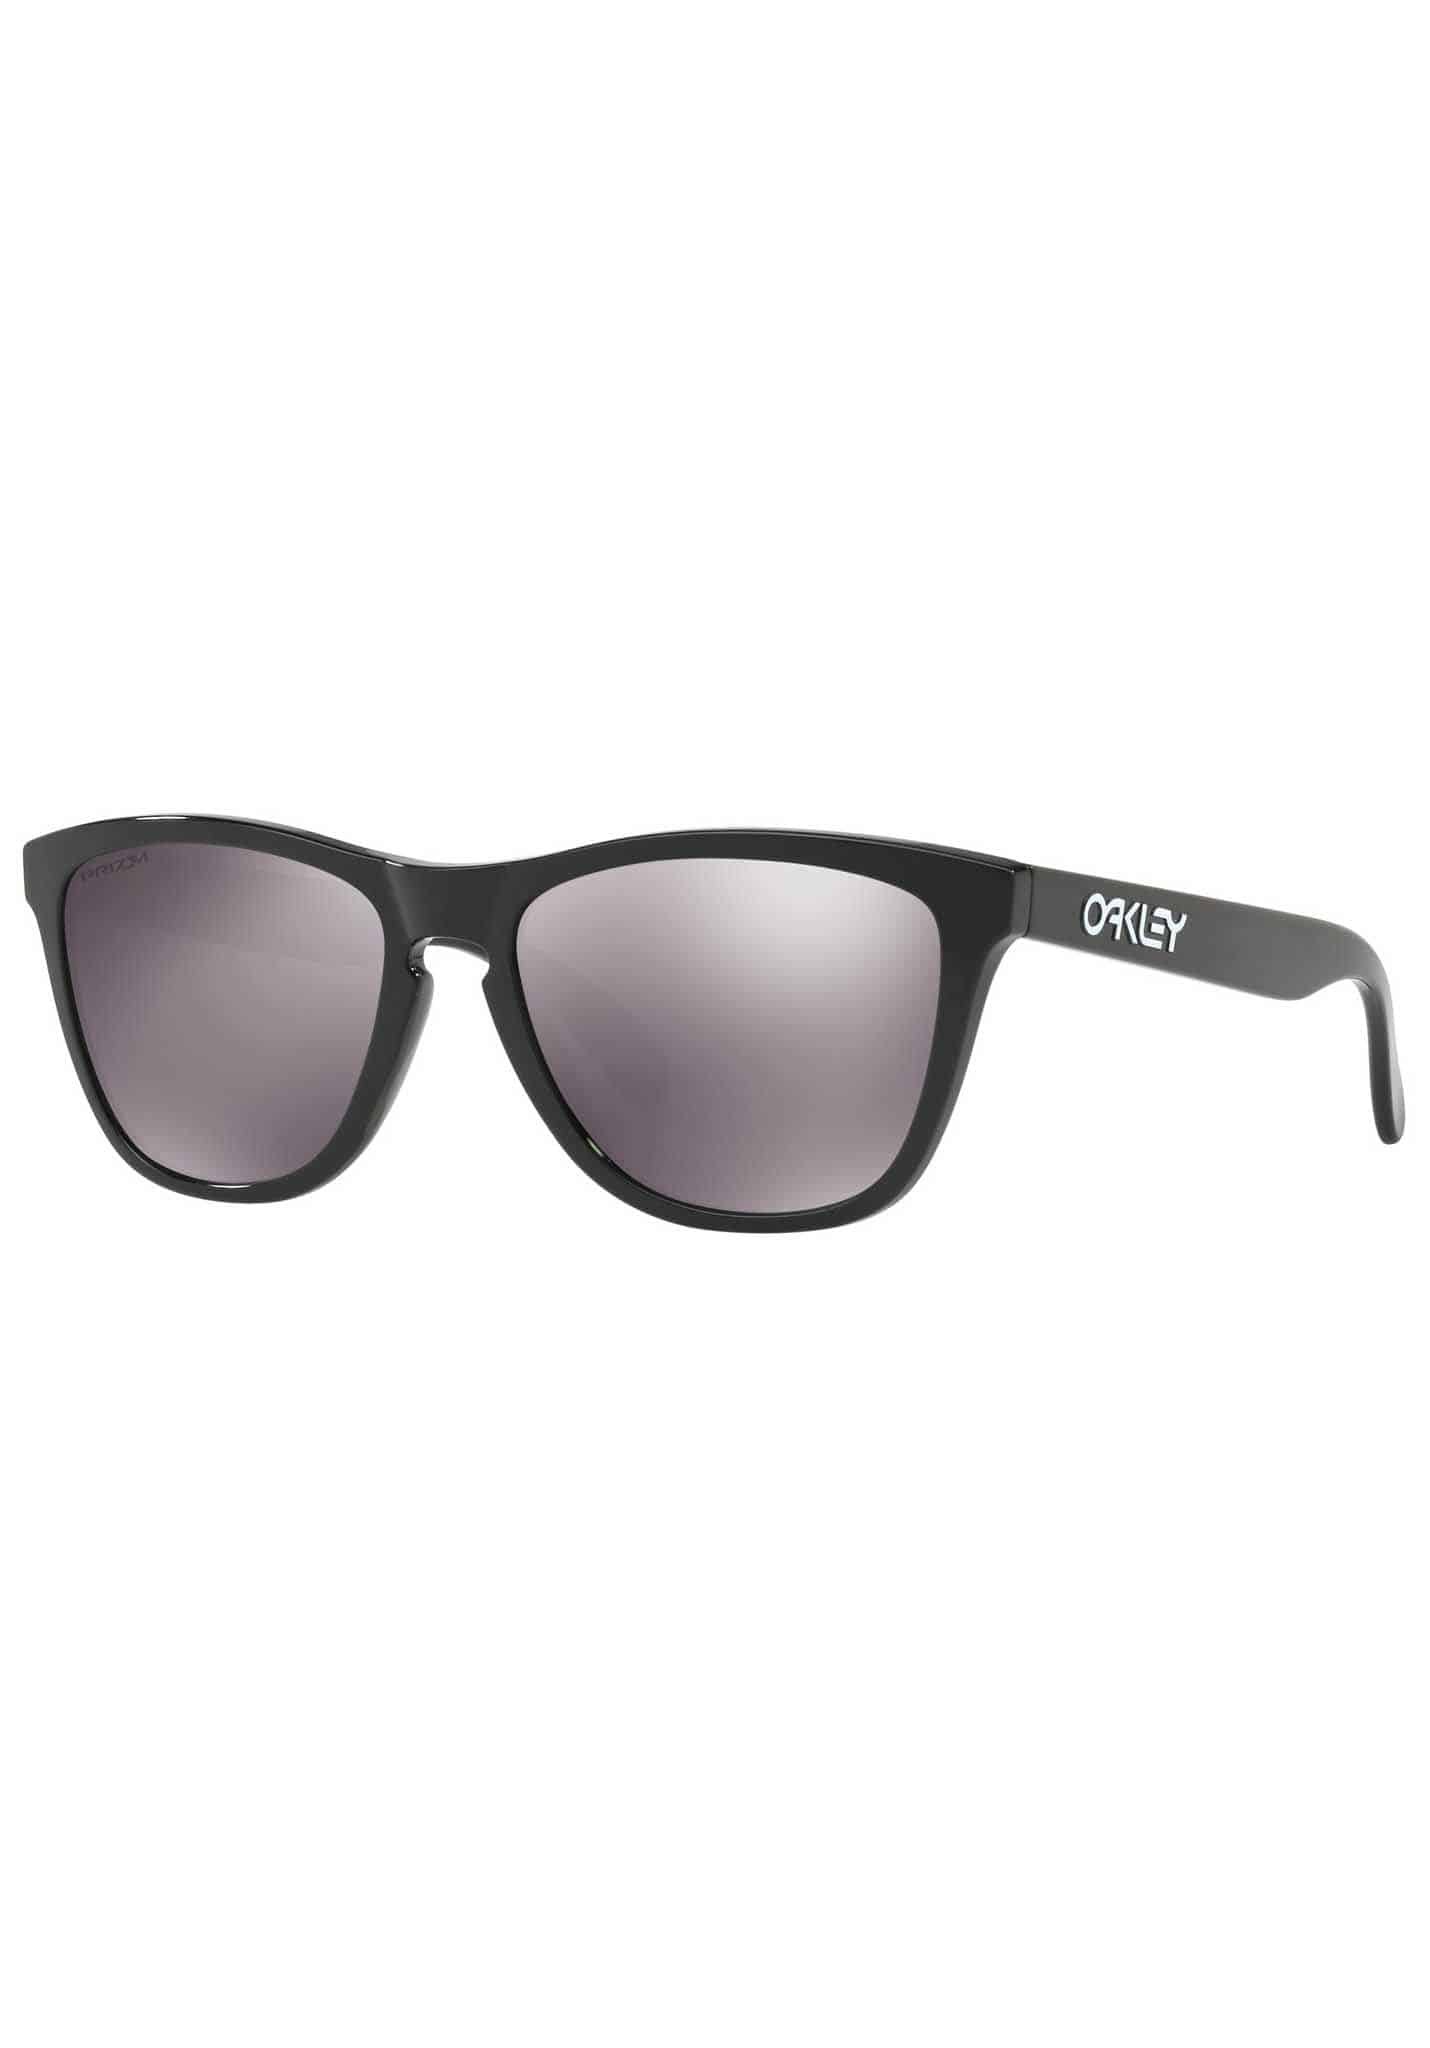 Oakley Frogskins Sonnenbrillen schwarz poliert mit prizm schwarz One Size